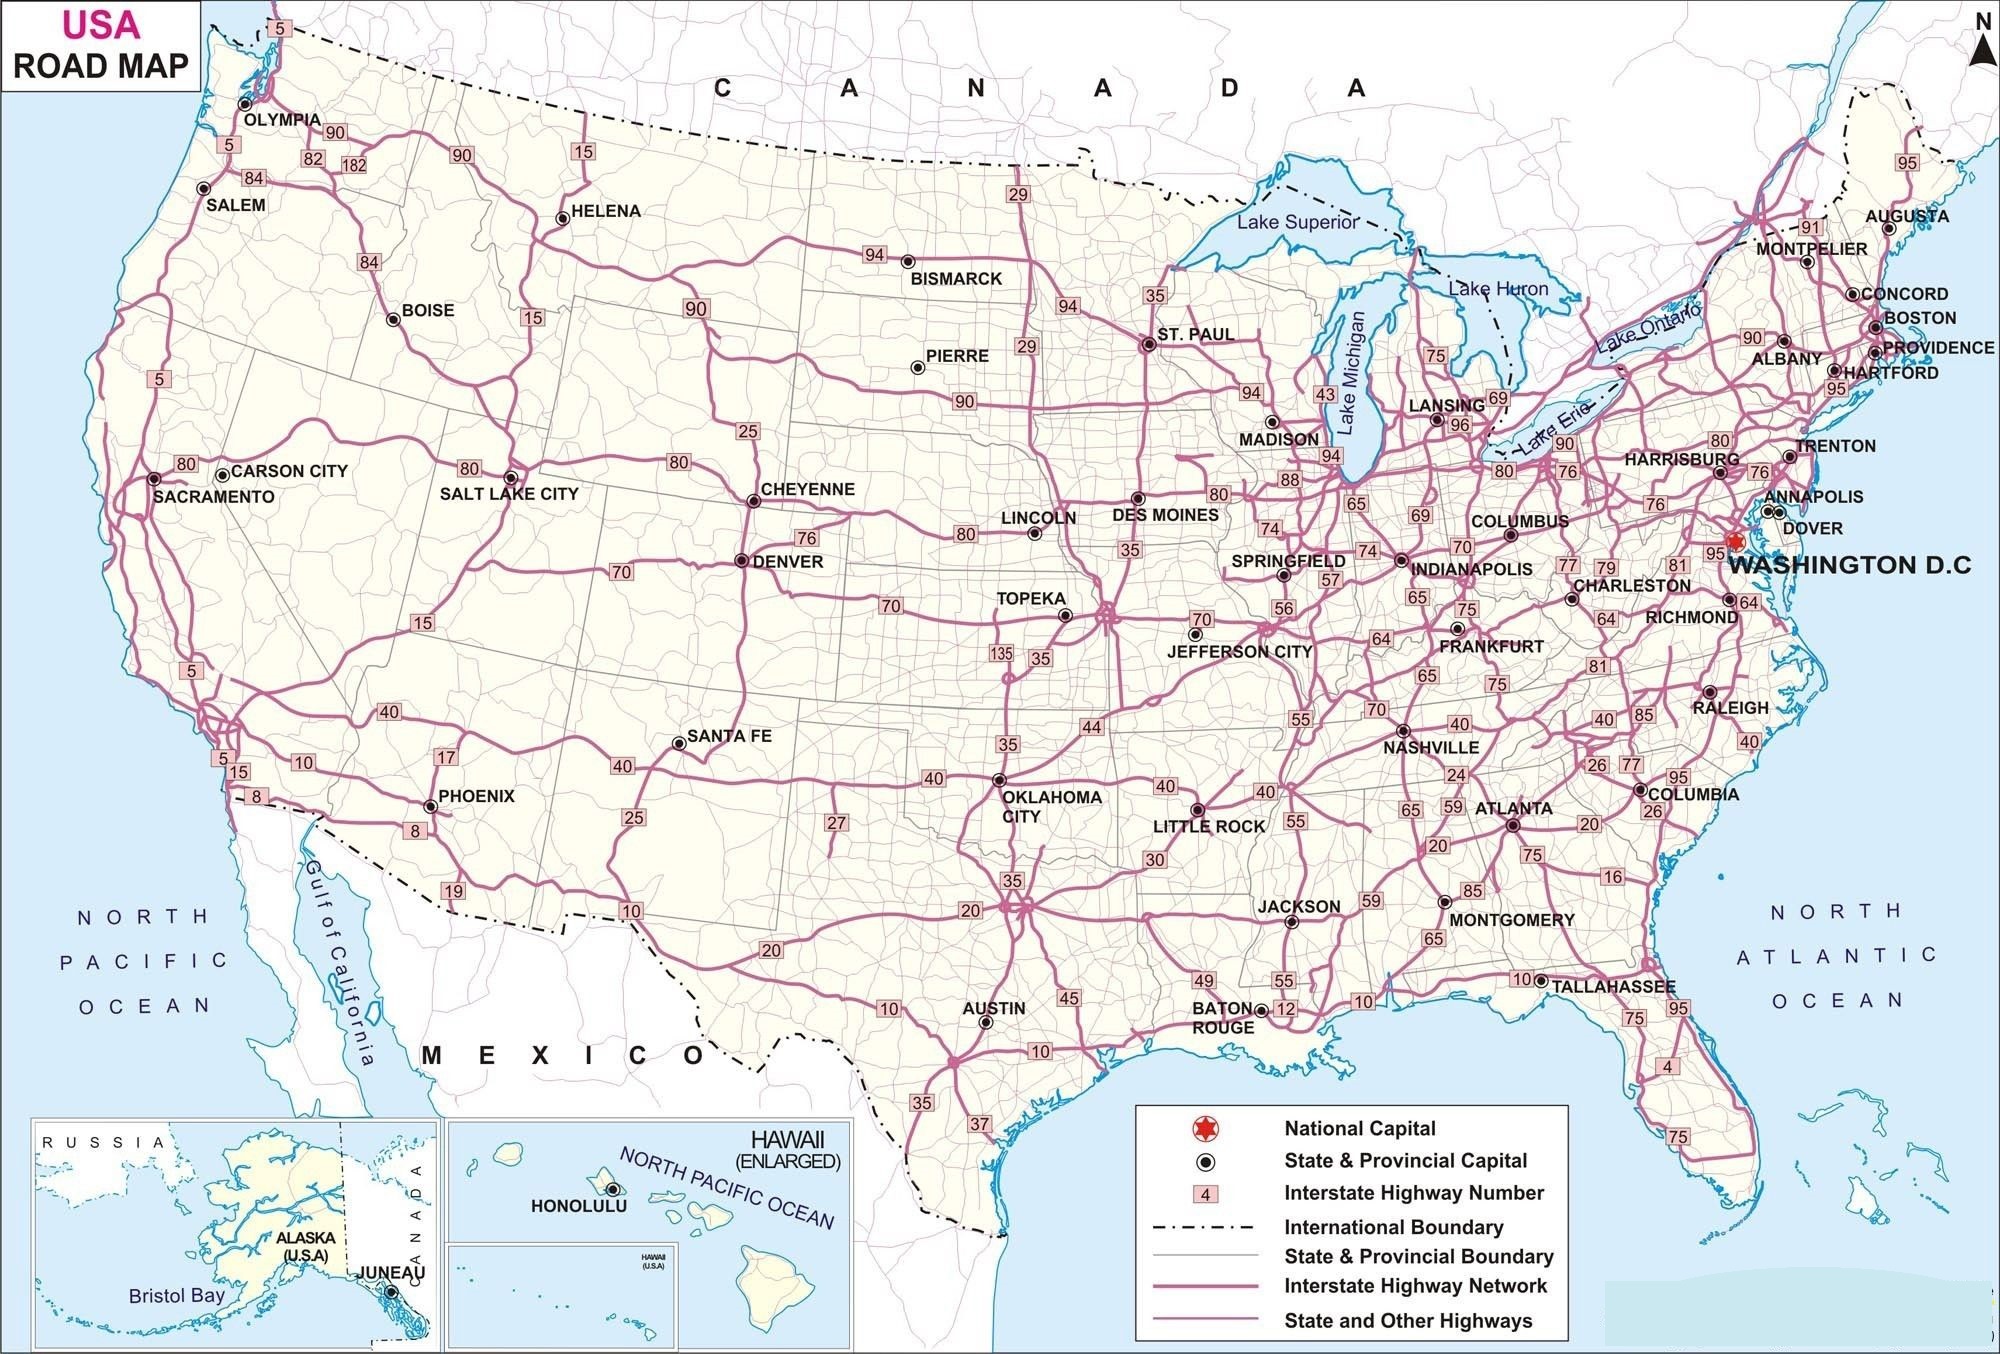 U.S Highway Map